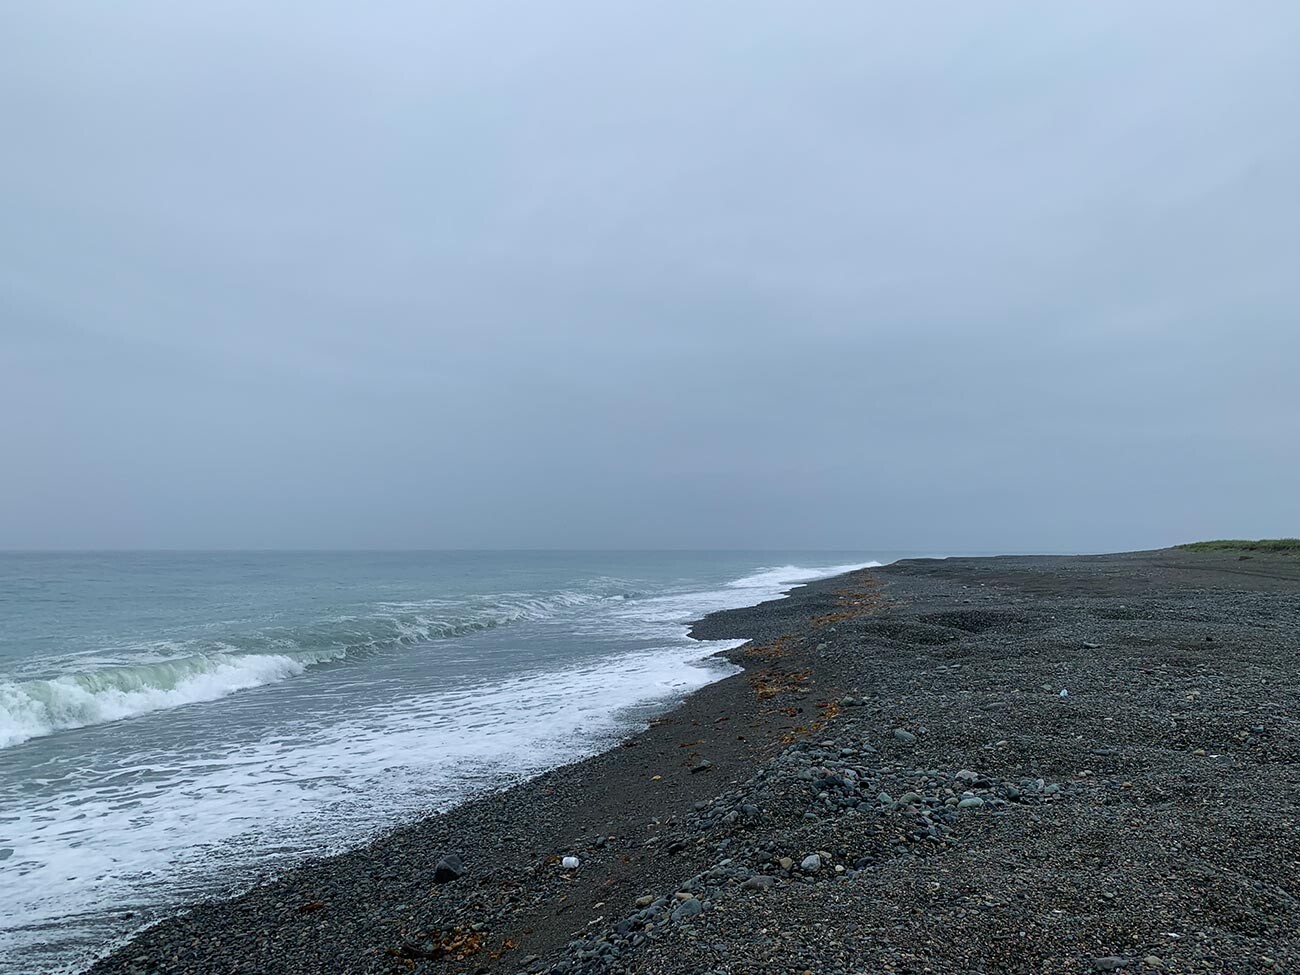 Nel Mare di Bering si trova uno degli spuntoni di terra più lunghi del mondo, chiamato Meechkyn, lungo 60 chilometri